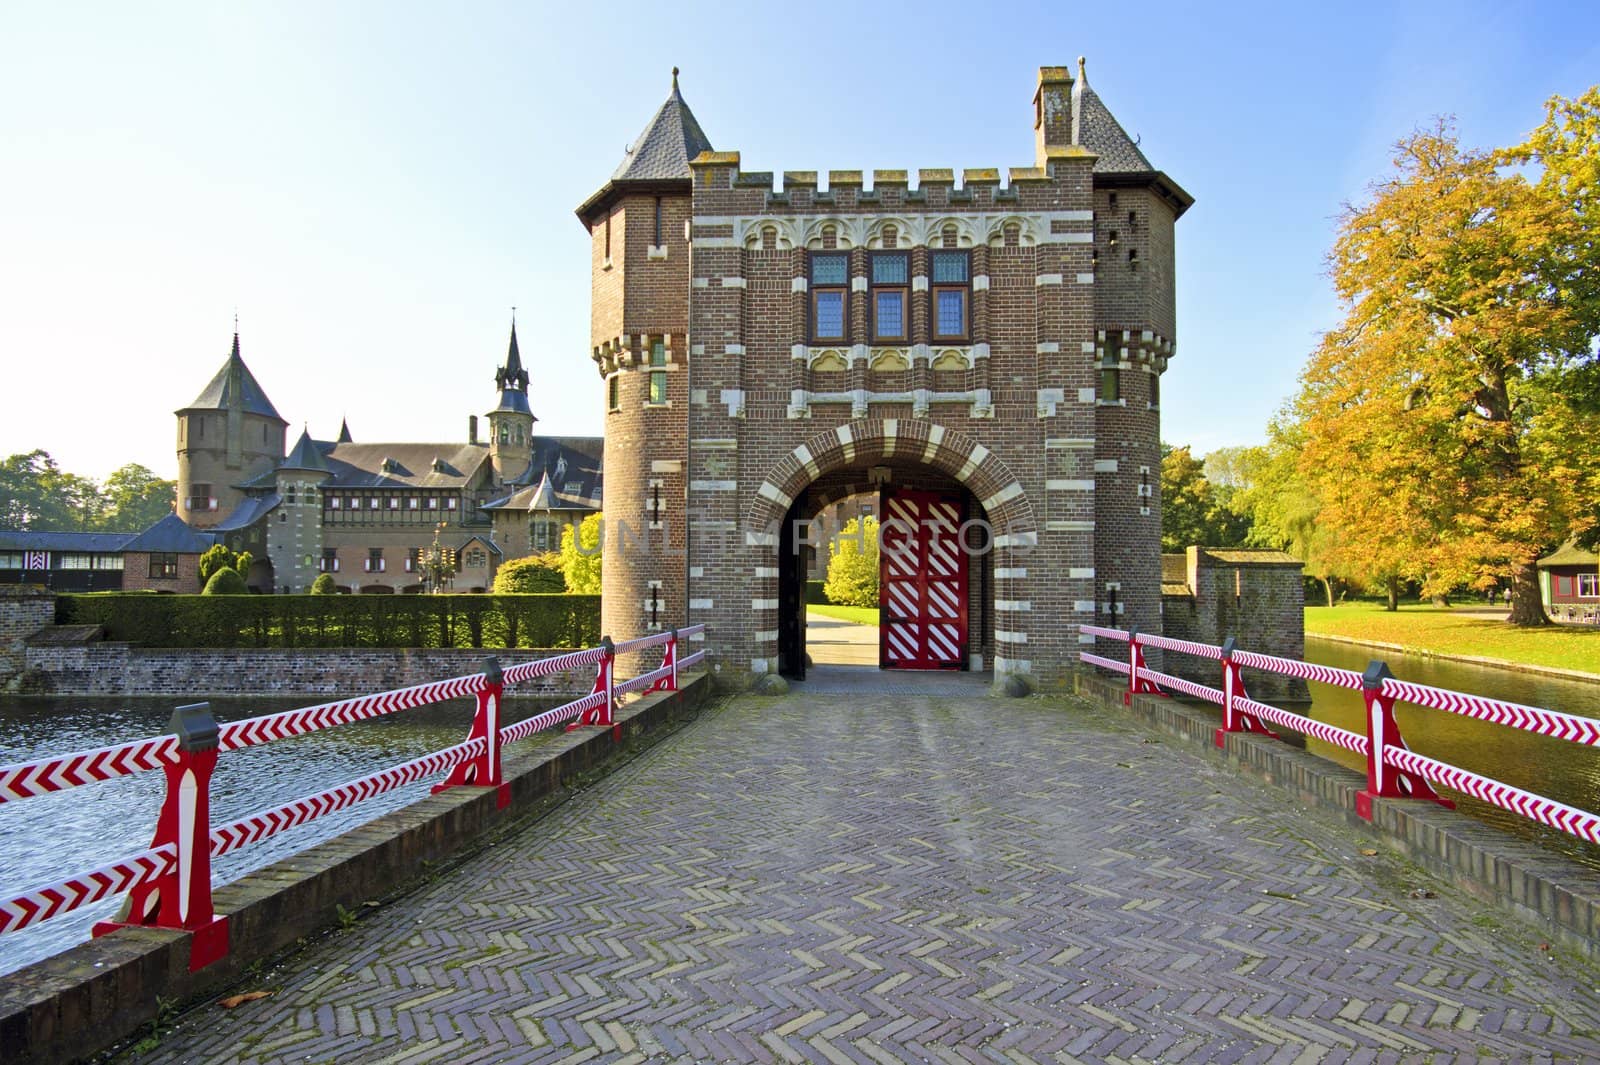 medieval castle De Haar in the Netherlands by devy